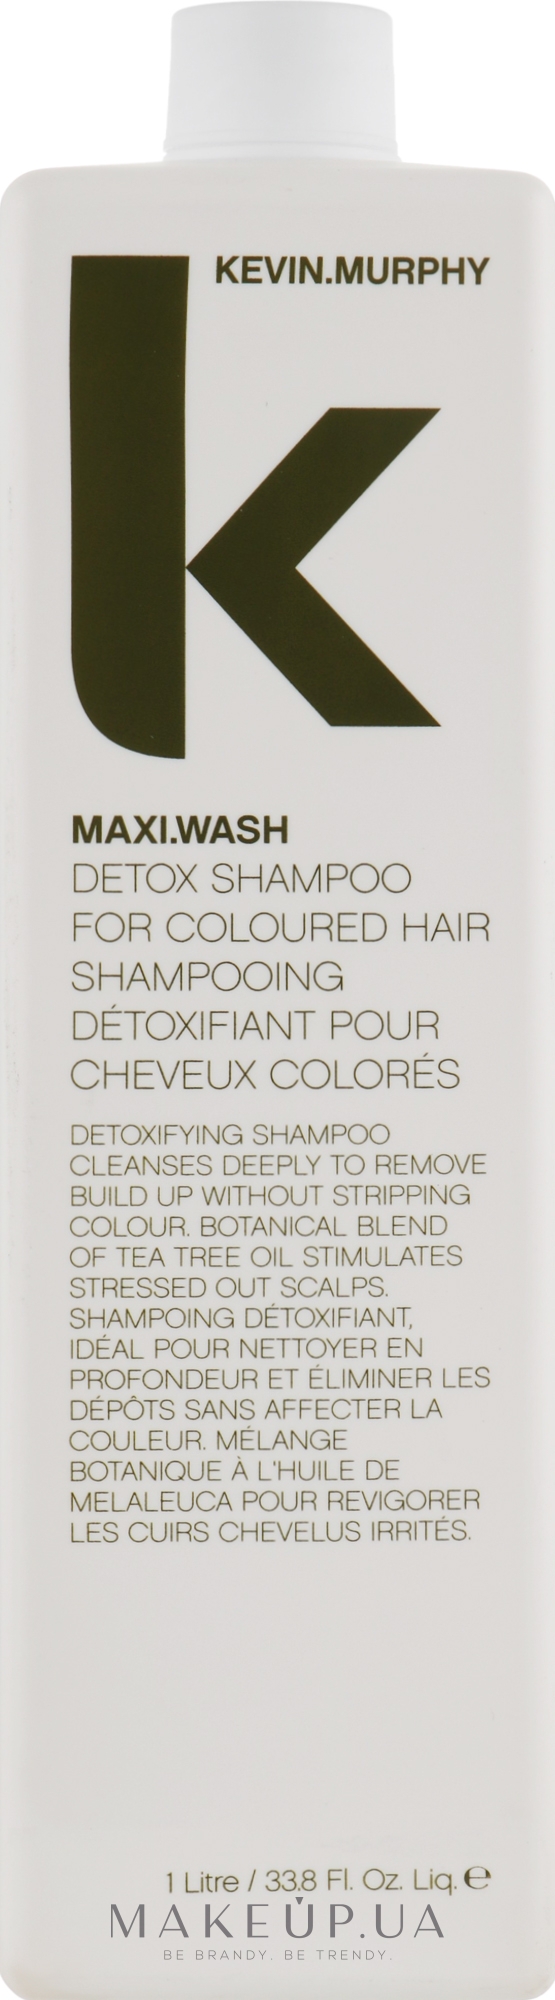 Детоксифицирующий шампунь для окрашенных волос - Kevin.Murphy Maxi.Wash — фото 1000ml